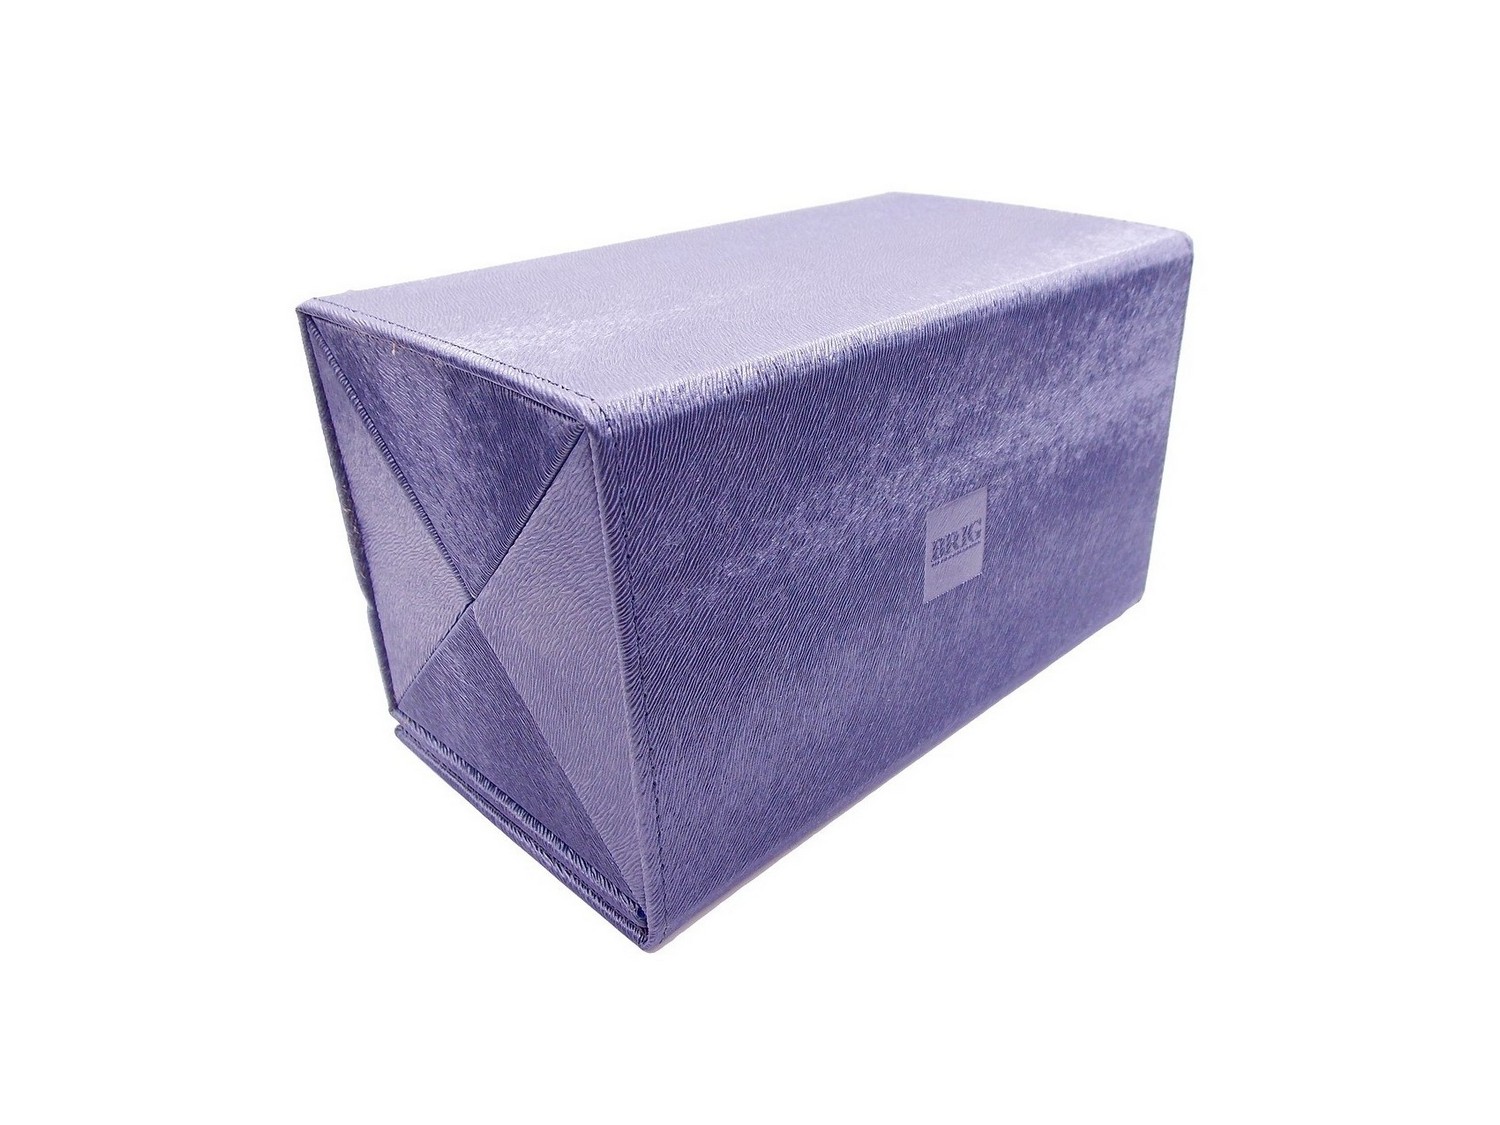 Мультифутляр BOX 4.90.50.02 мульти-футляр серебристо-синий